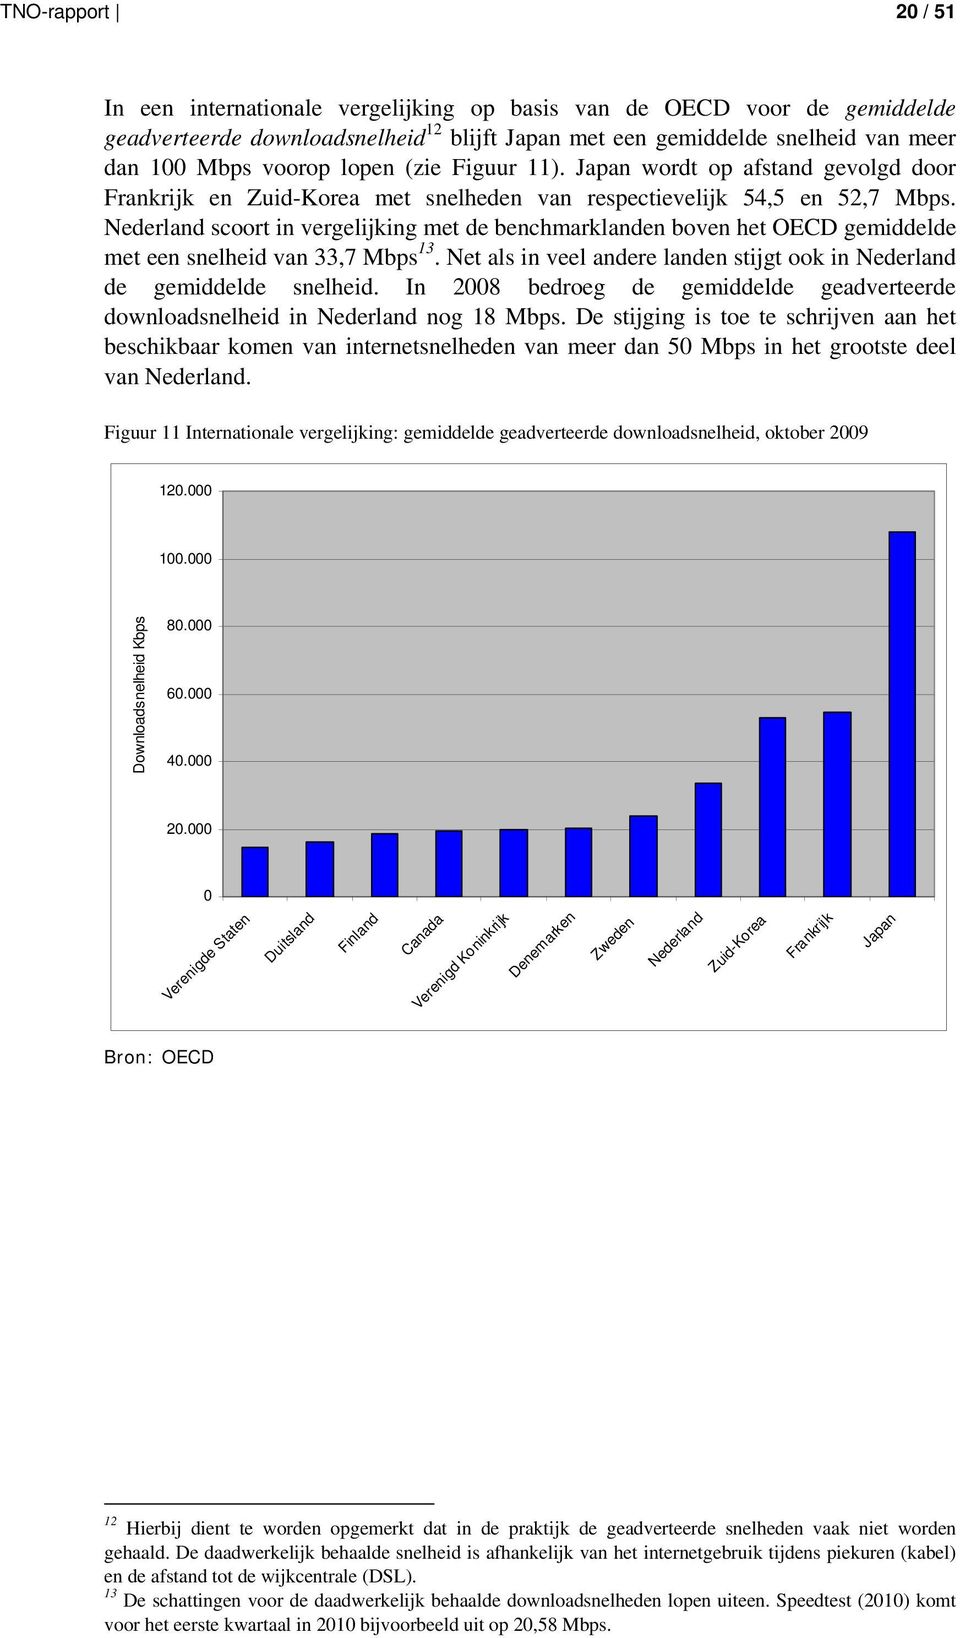 Nederland scoort in vergelijking met de benchmarklanden boven het OECD gemiddelde met een snelheid van 33,7 Mbps 13. Net als in veel andere landen stijgt ook in Nederland de gemiddelde snelheid.